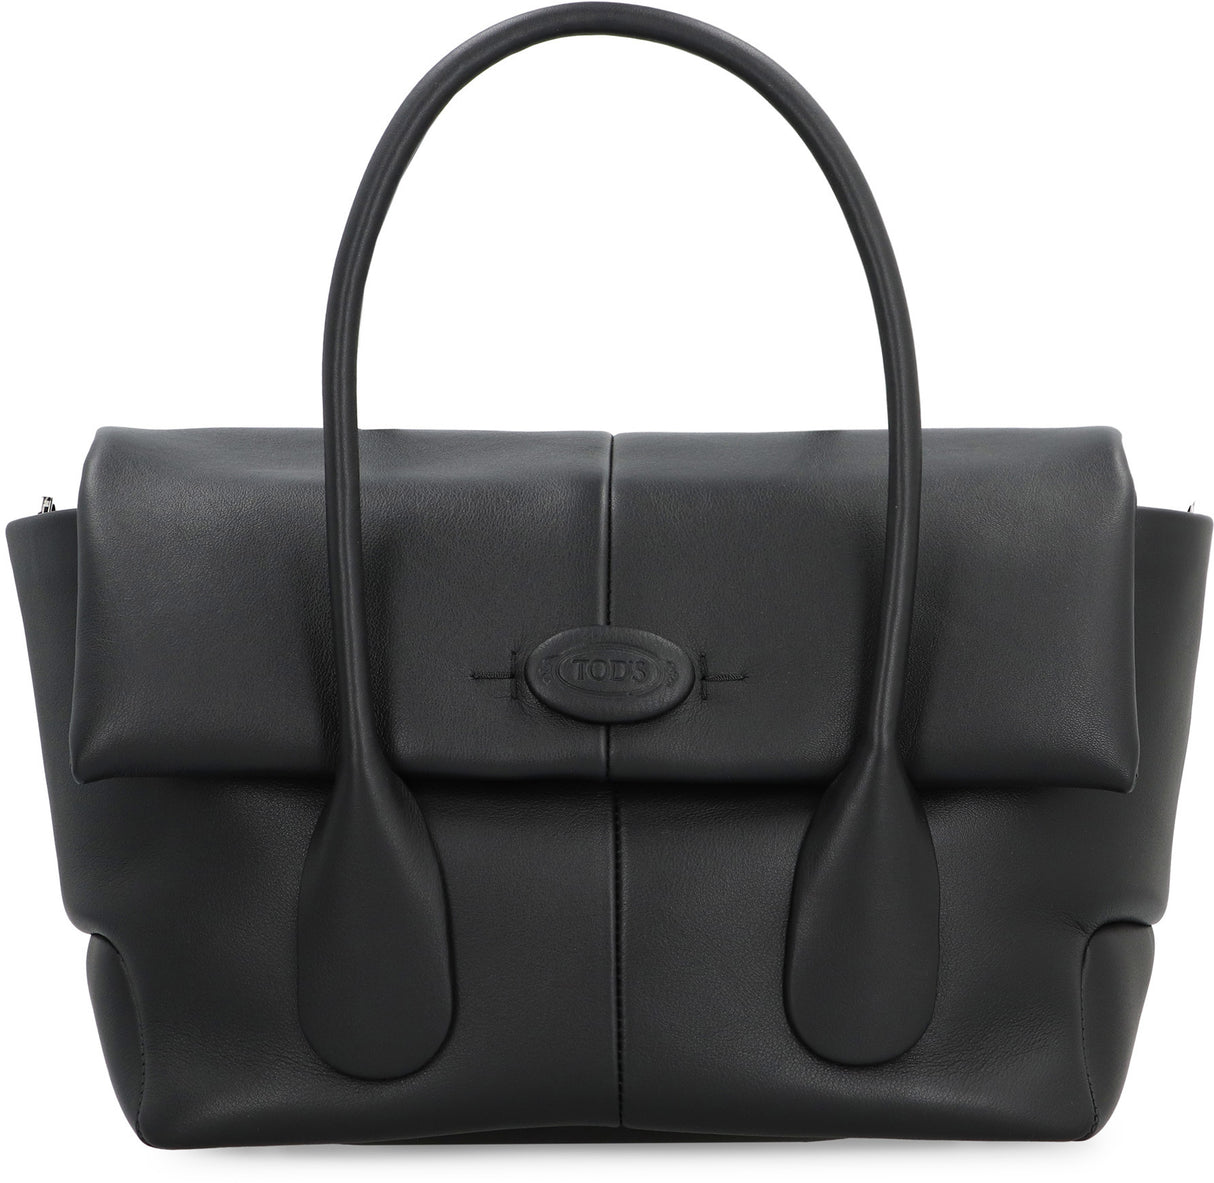 TOD'S New Arrival: Elegant Black Leather Reversible Handbag for Women